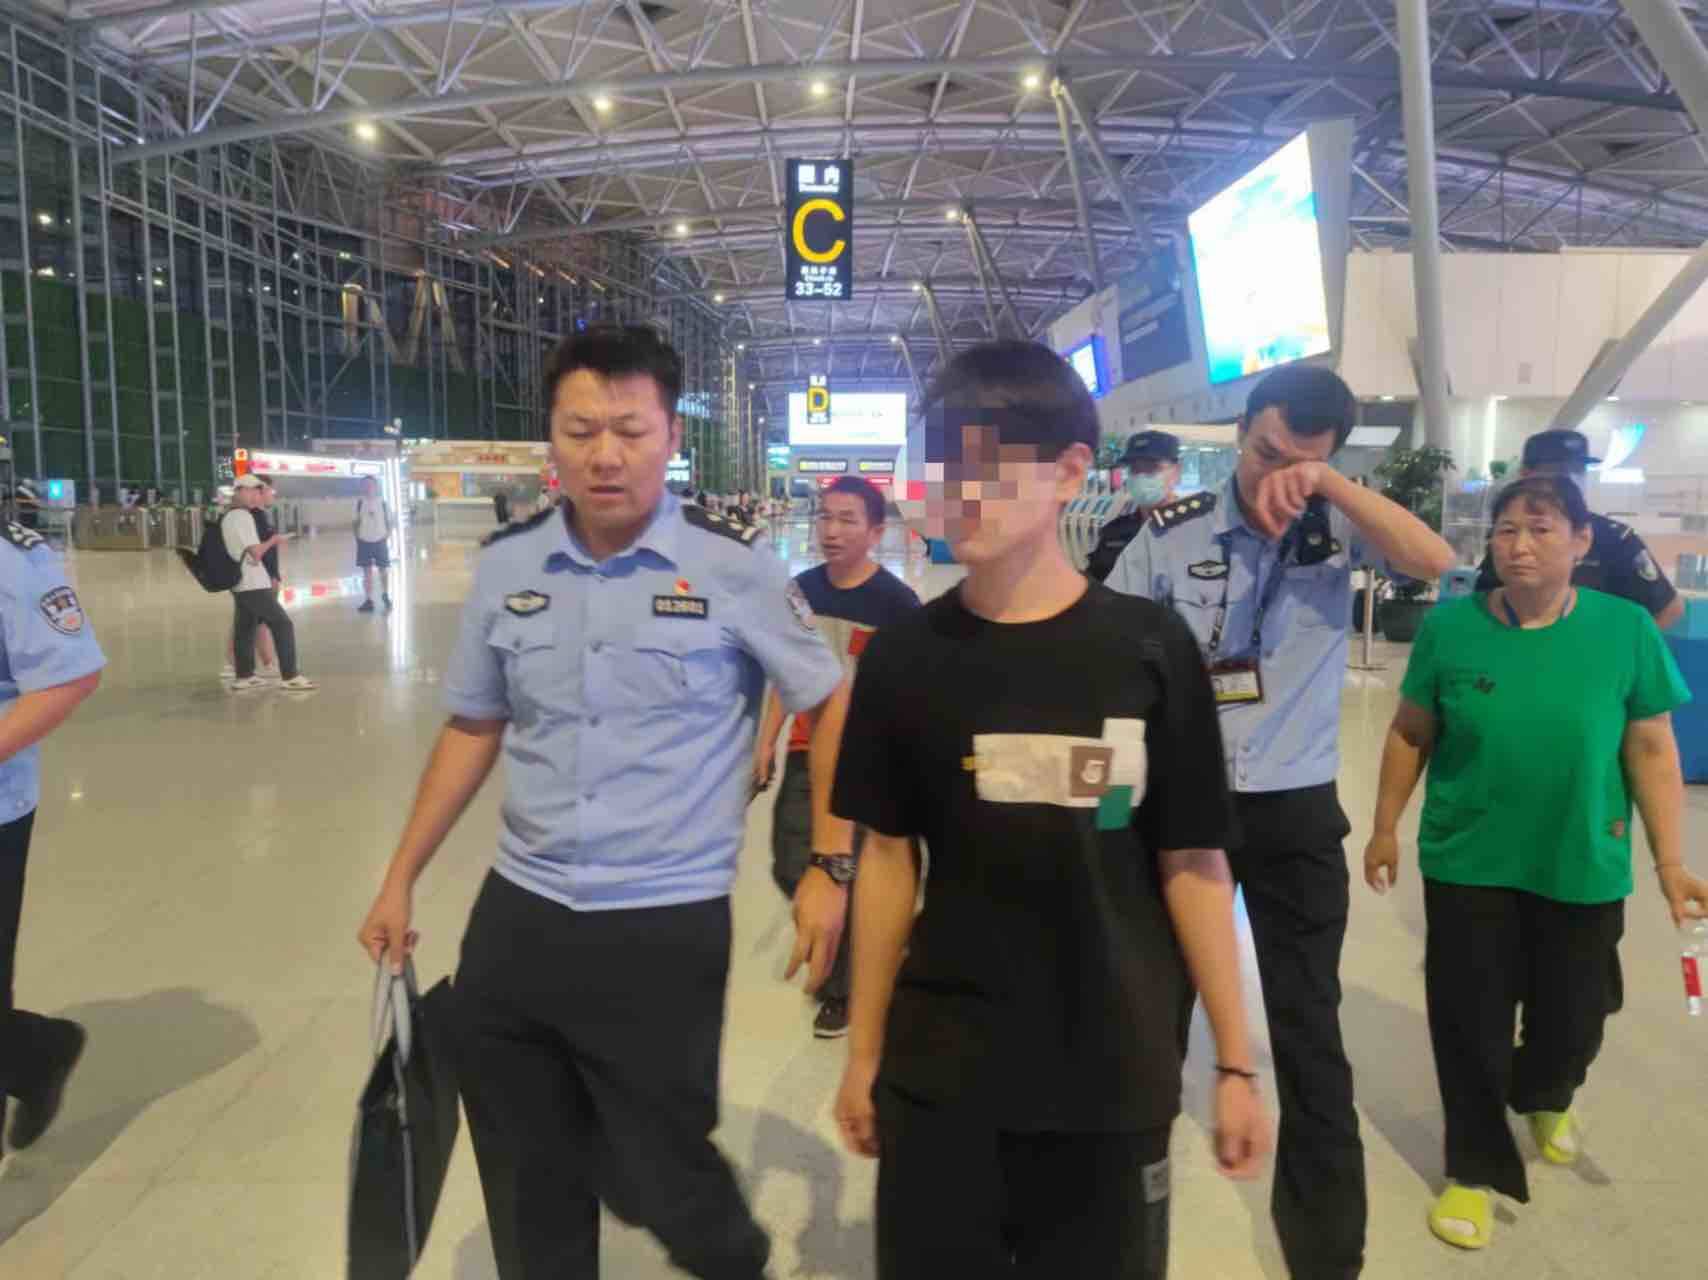 17岁男孩买机票去云南找网友疑遭电诈 济南警方赶往机场紧急拦截